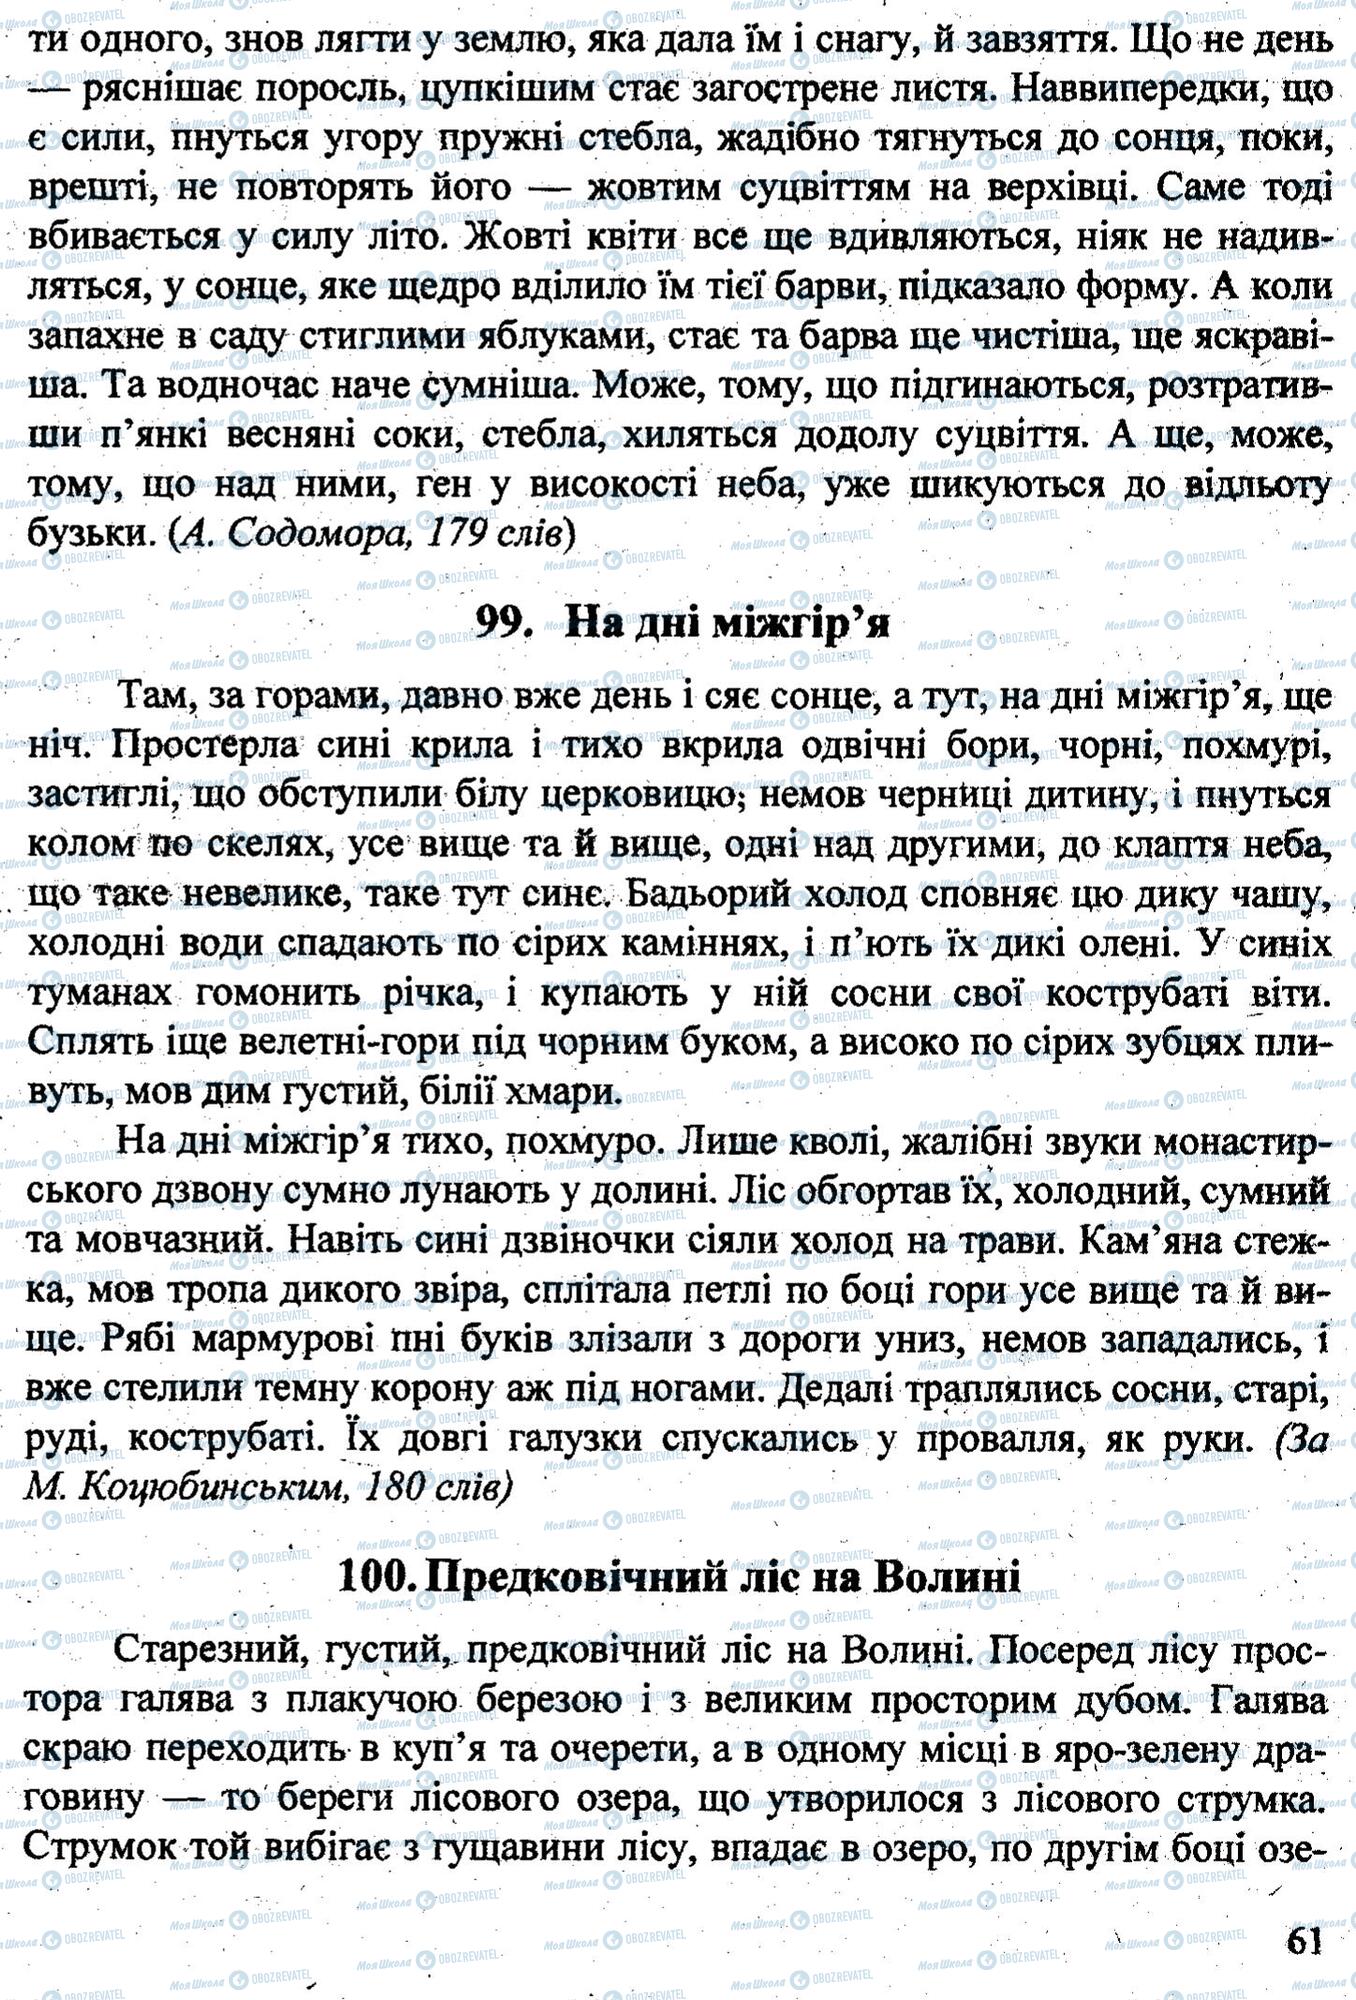 ДПА Укр мова 9 класс страница 0062